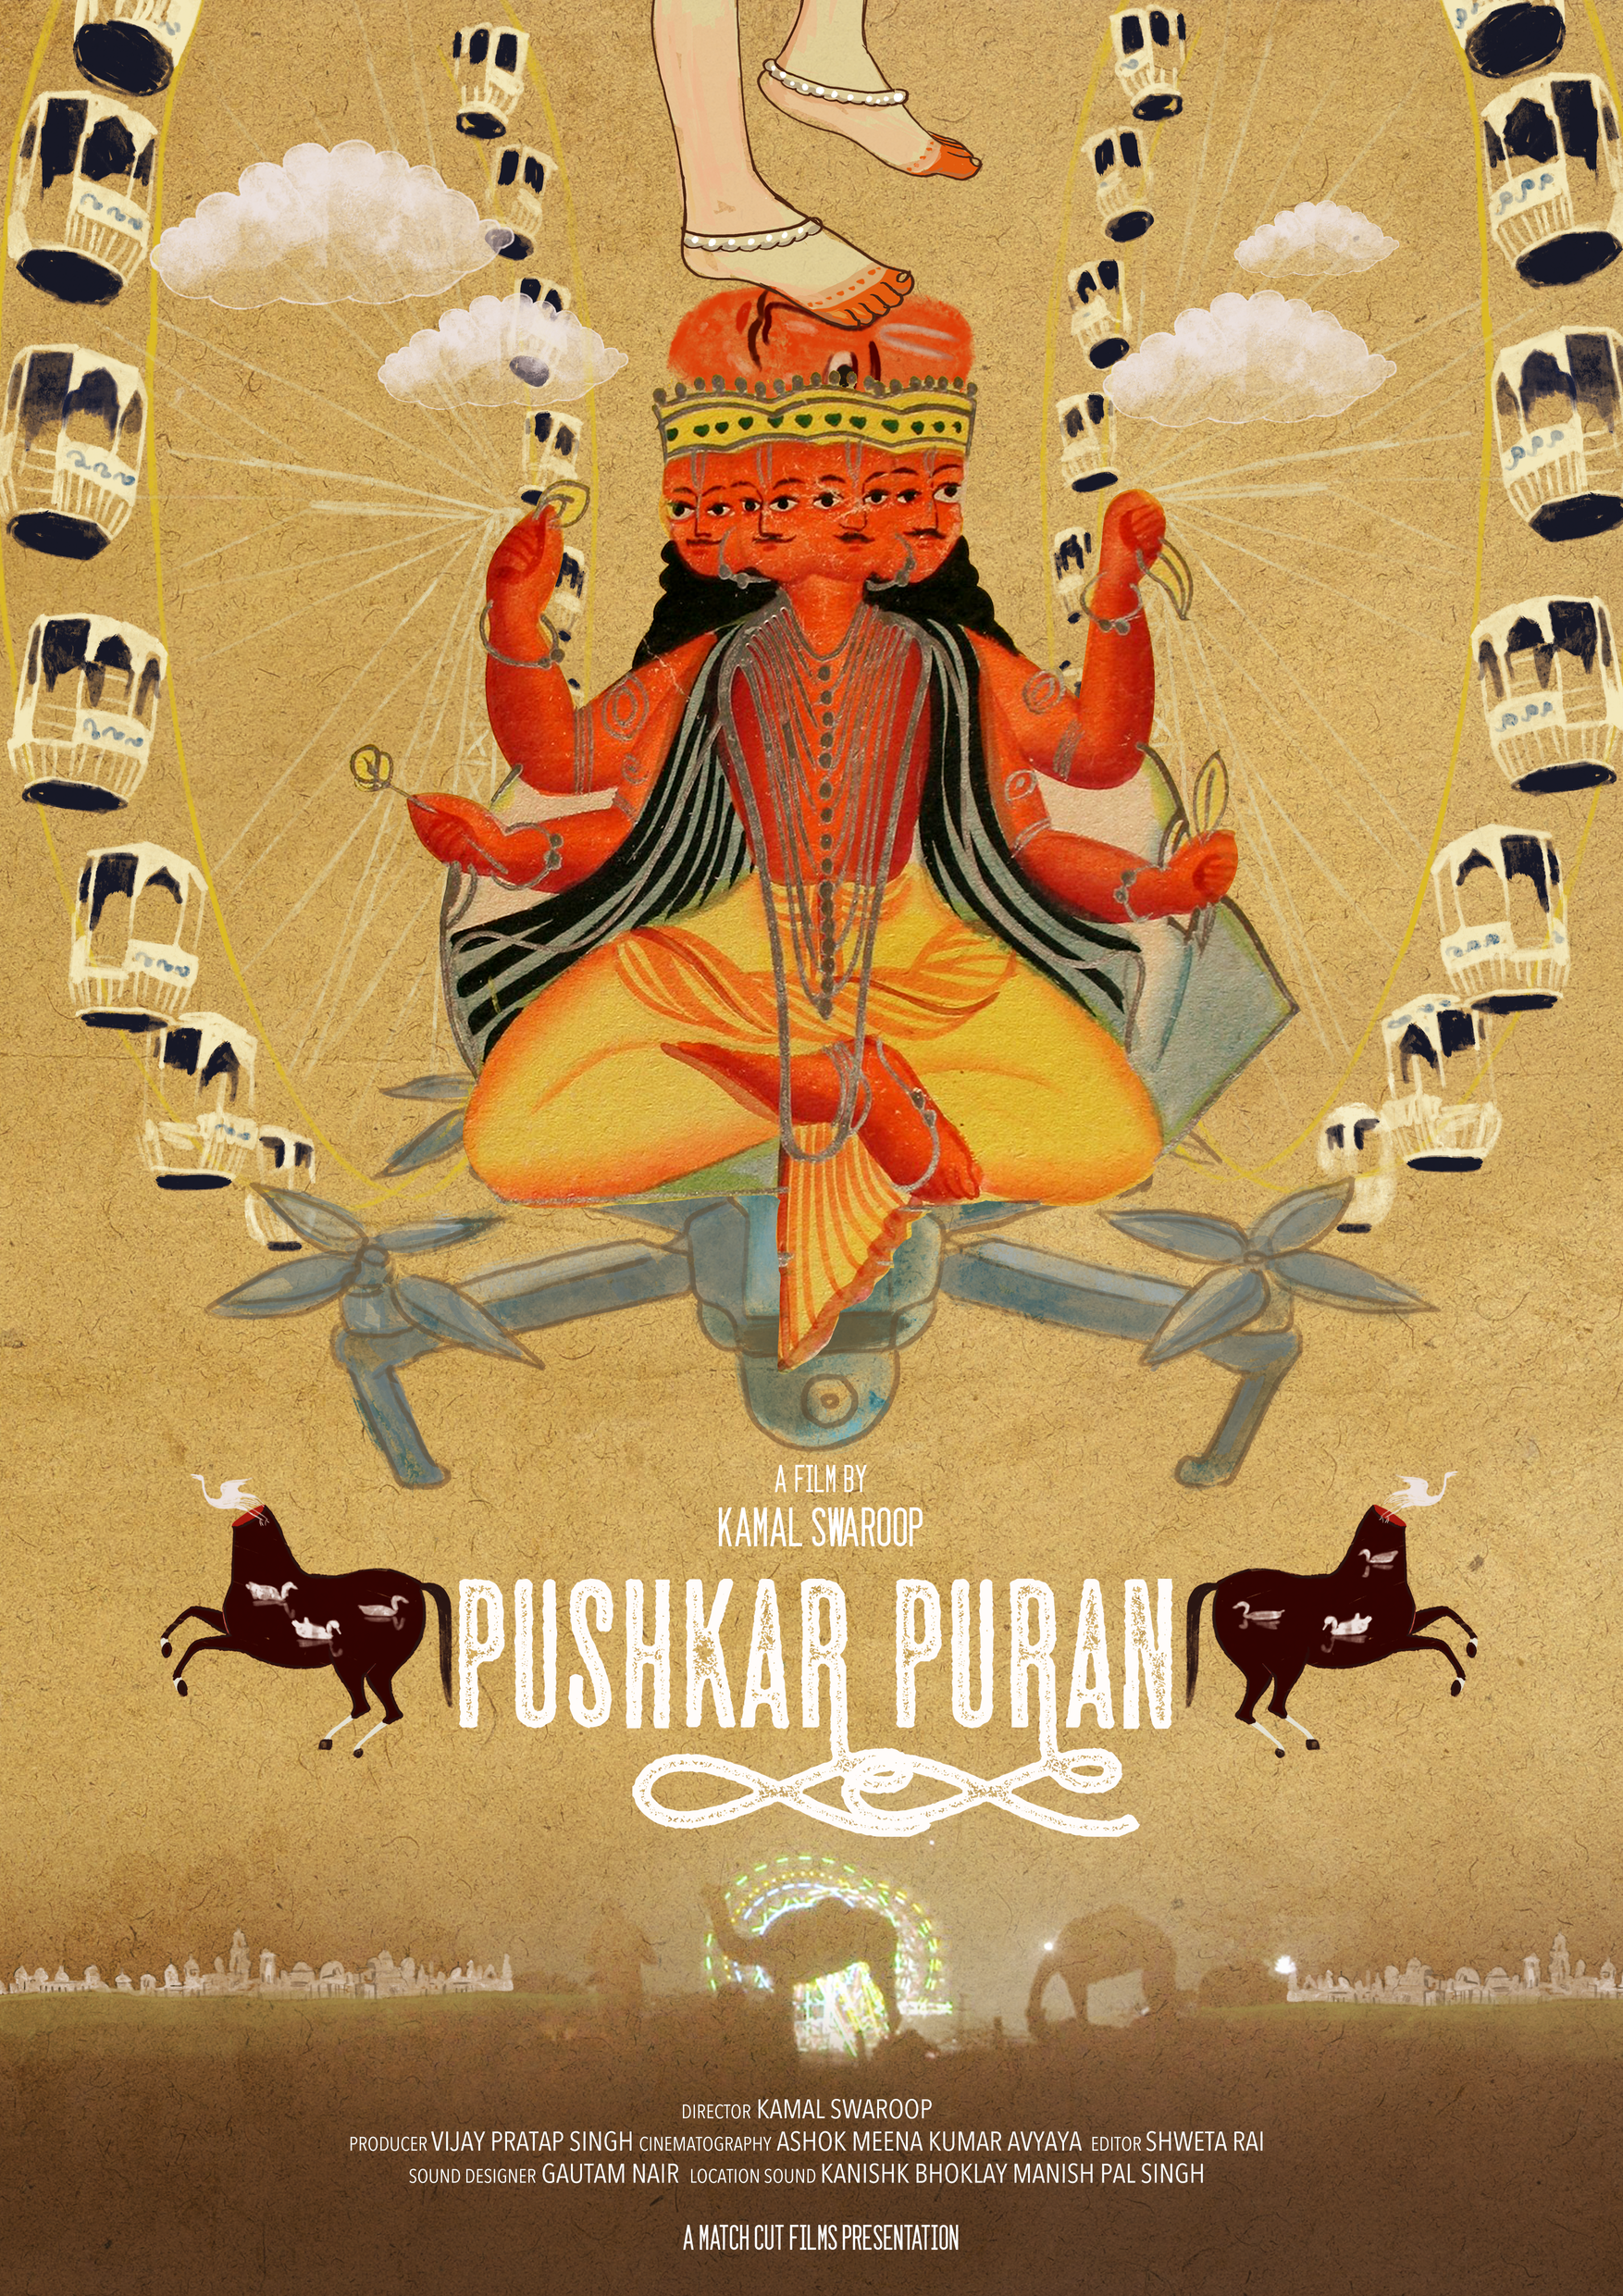 COMING SOON! Pushkar Puran